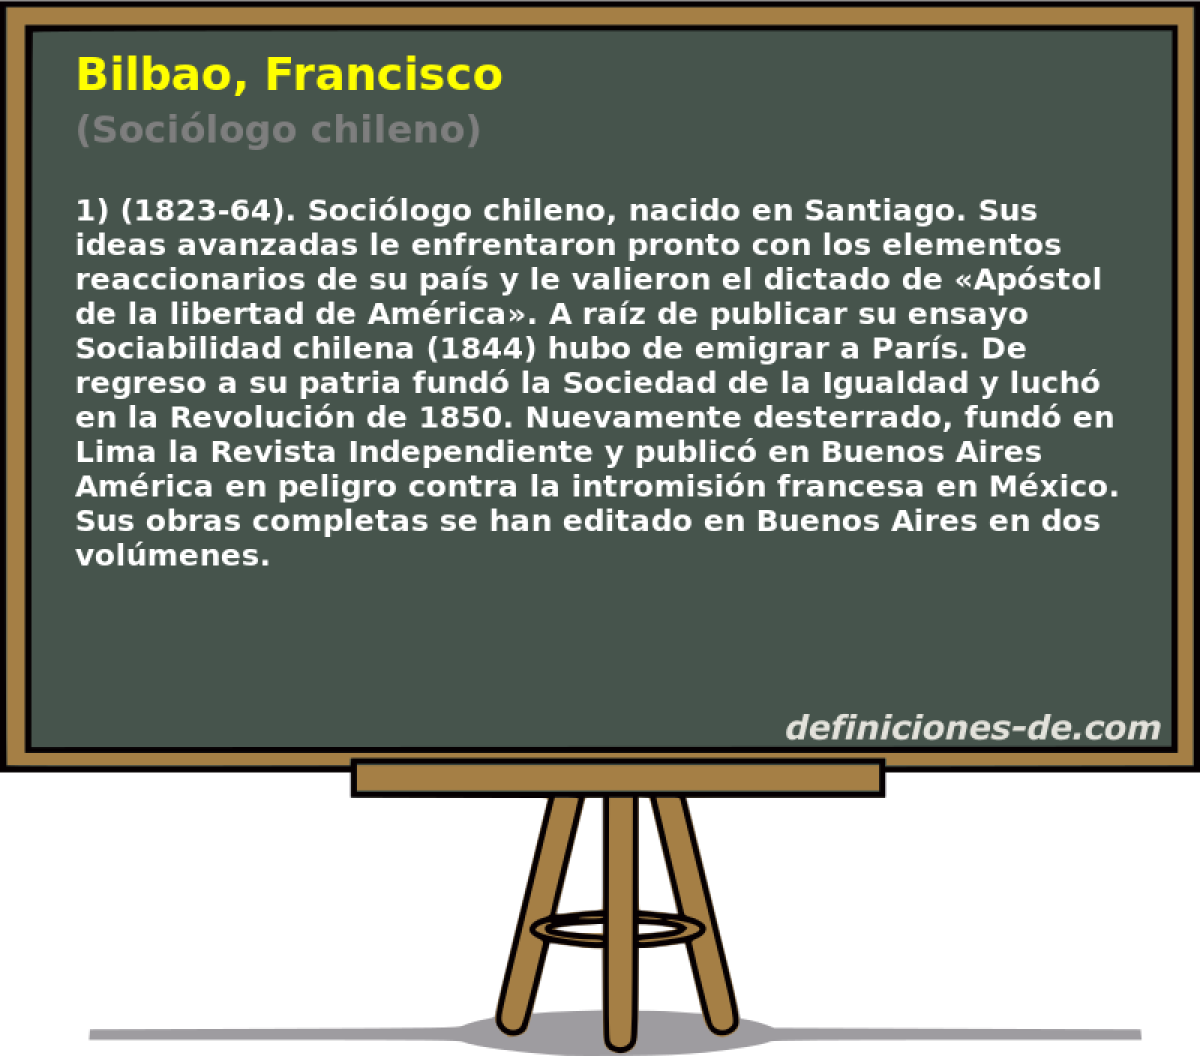 Bilbao, Francisco (Socilogo chileno)